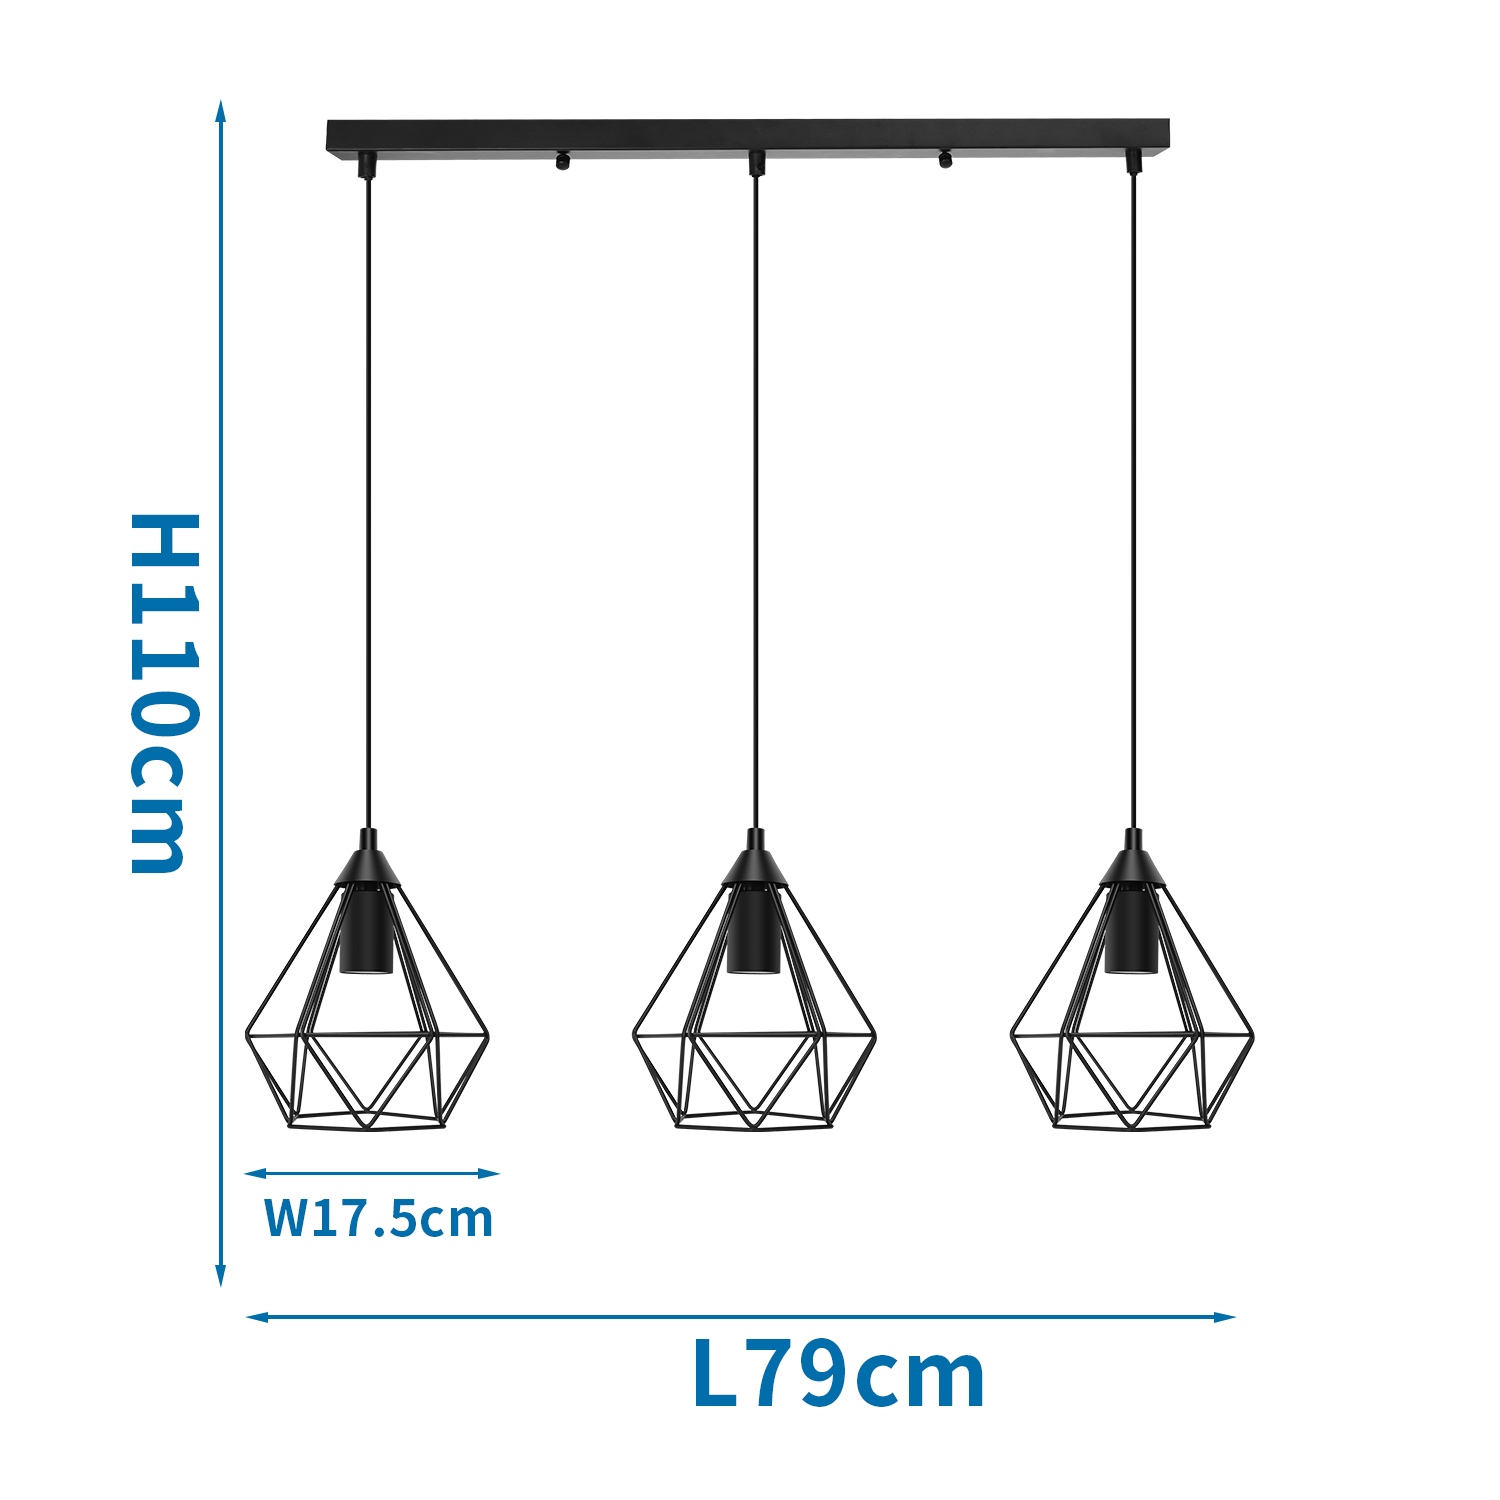 Aigostar 13A4E - Industriële Hanglamp - 3 lichts - E27 fitting - Ø 17.5cm - Eetkamer - Slaapkamer - excl. lichtbronnen - Zwart